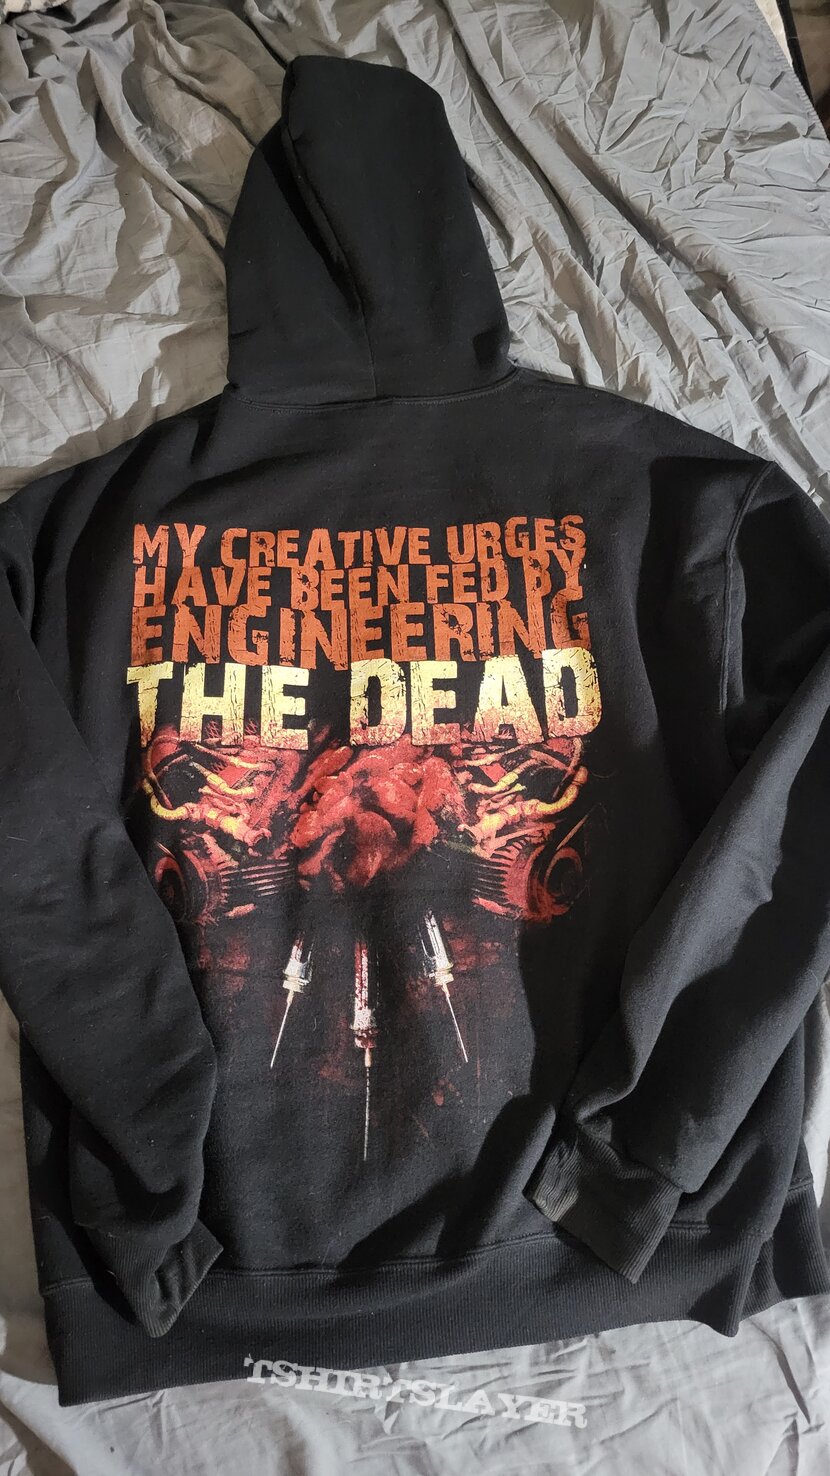 Aborted &quot;Engineering The Dead&quot; zip-up hoodie